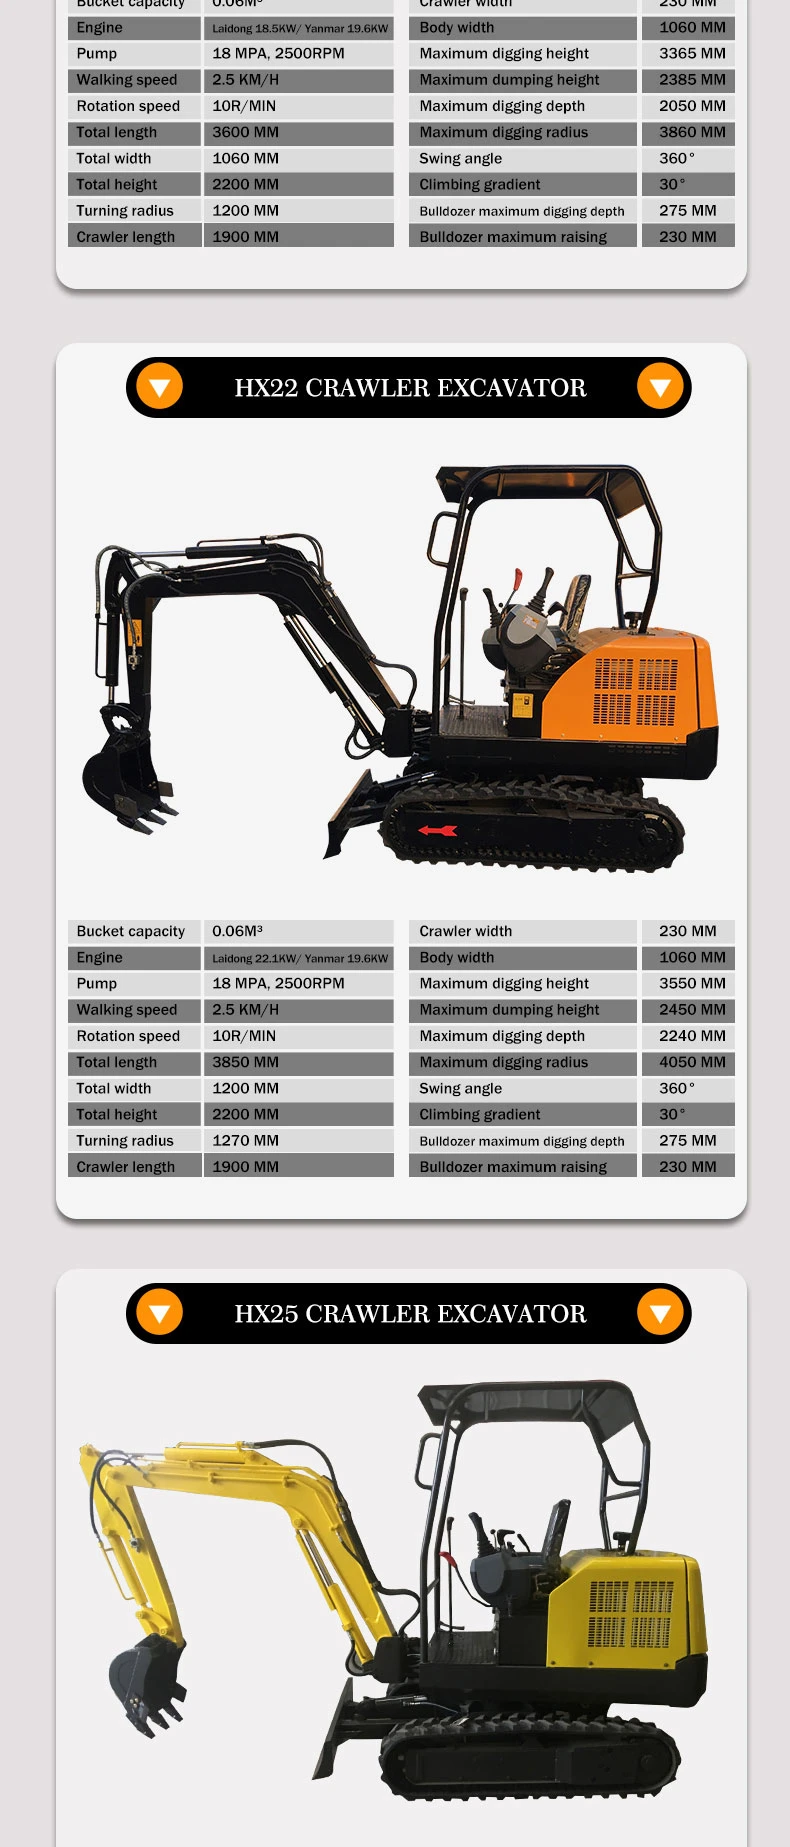 Hixen Mini Excavator Hx22 Micro Excavator Small Crawler Excavator Supply by Hixen